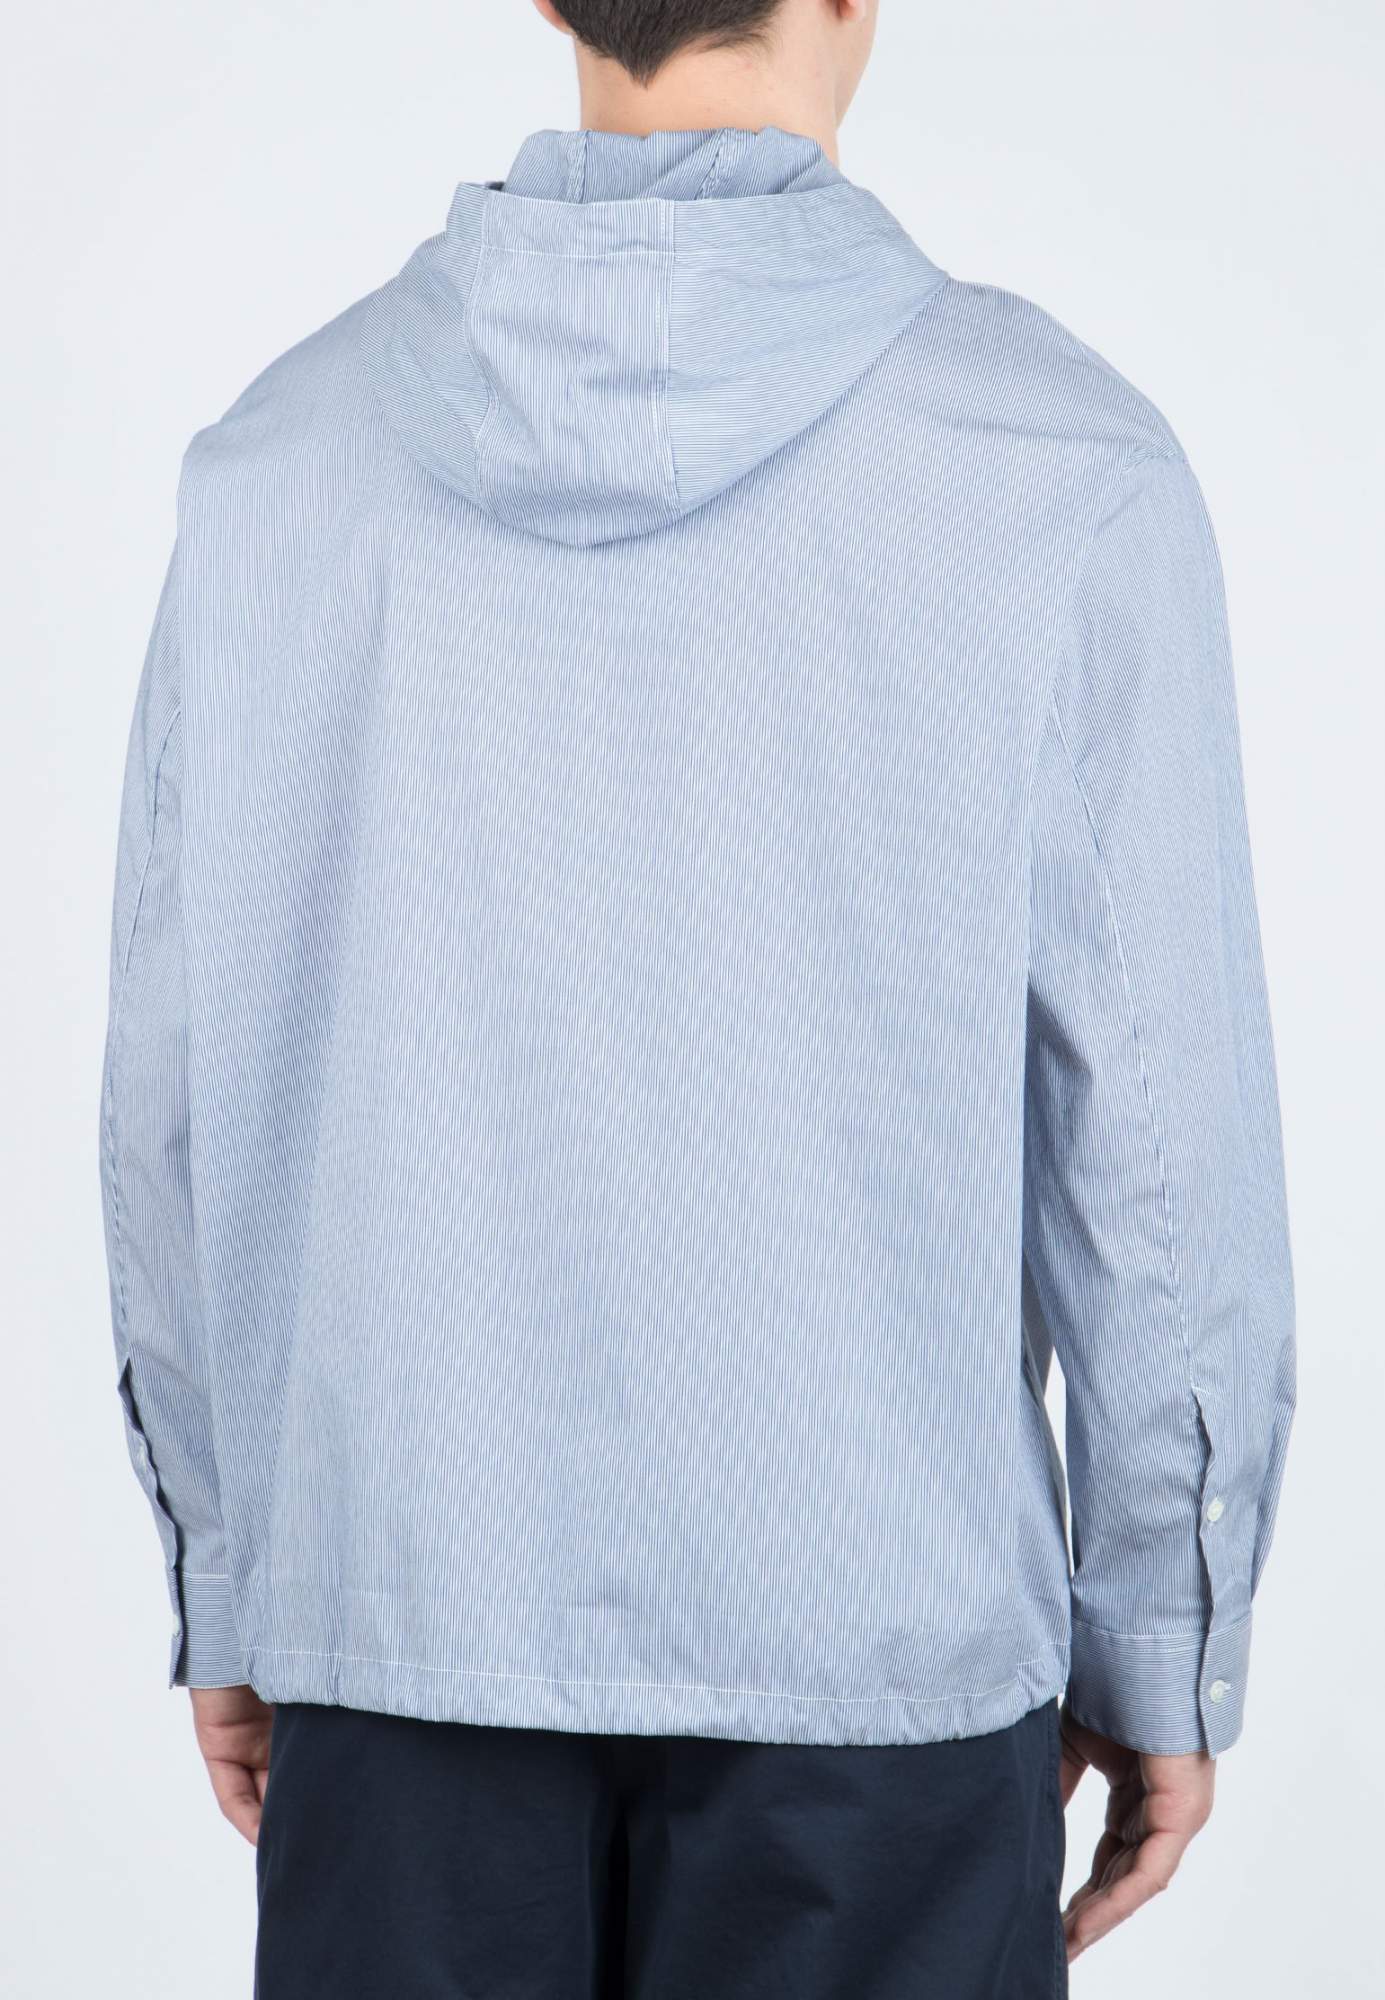 Рубашка мужская Emporio Armani 105661 голубая XL